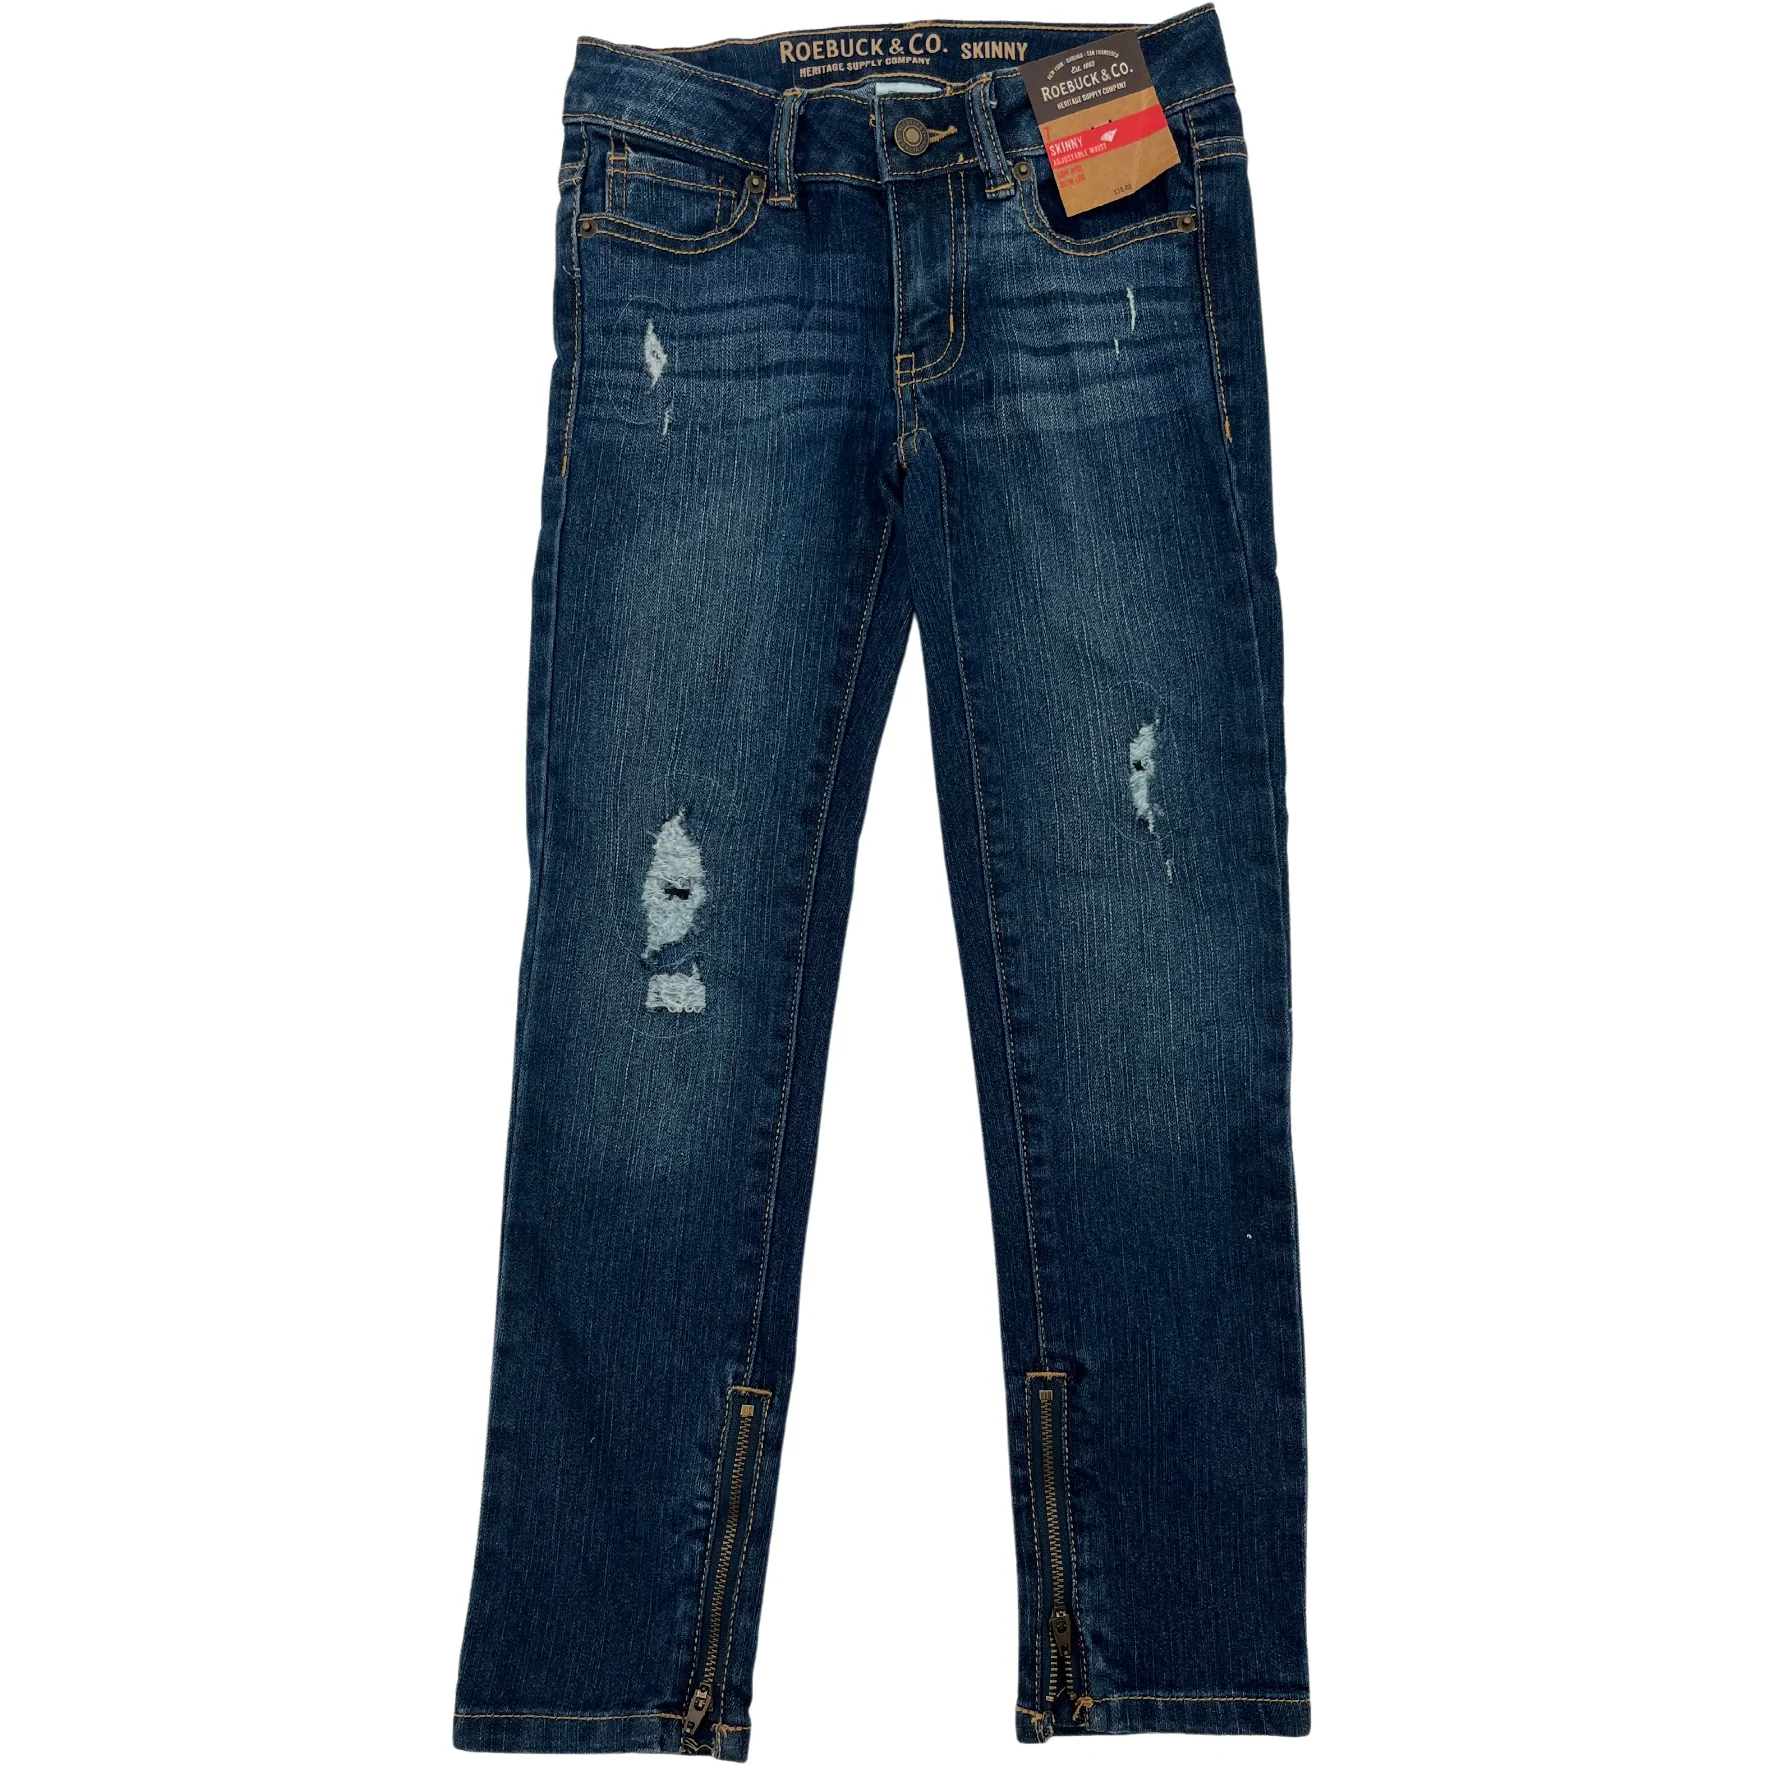 Roebuck Girl's Jeans: Skinny Jeans / Dark Wash / Size 7